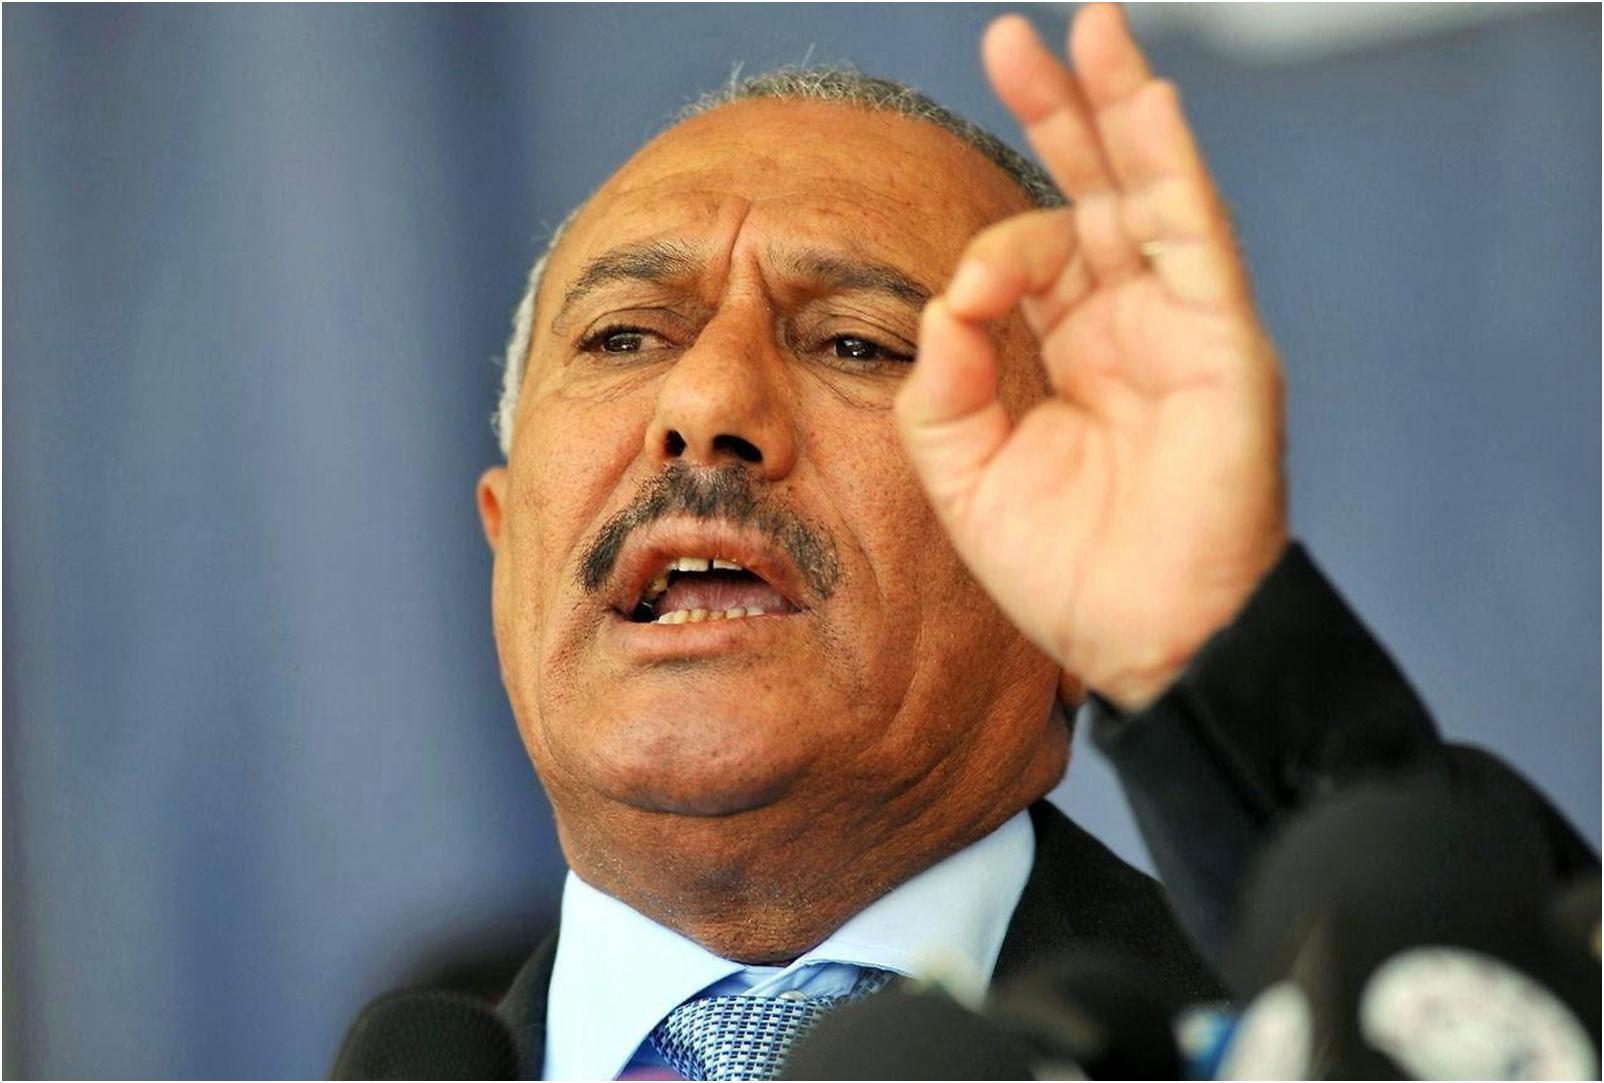 صالح يهاجم الحوثيين واصفاً إياهم بـ”المرتزقة”